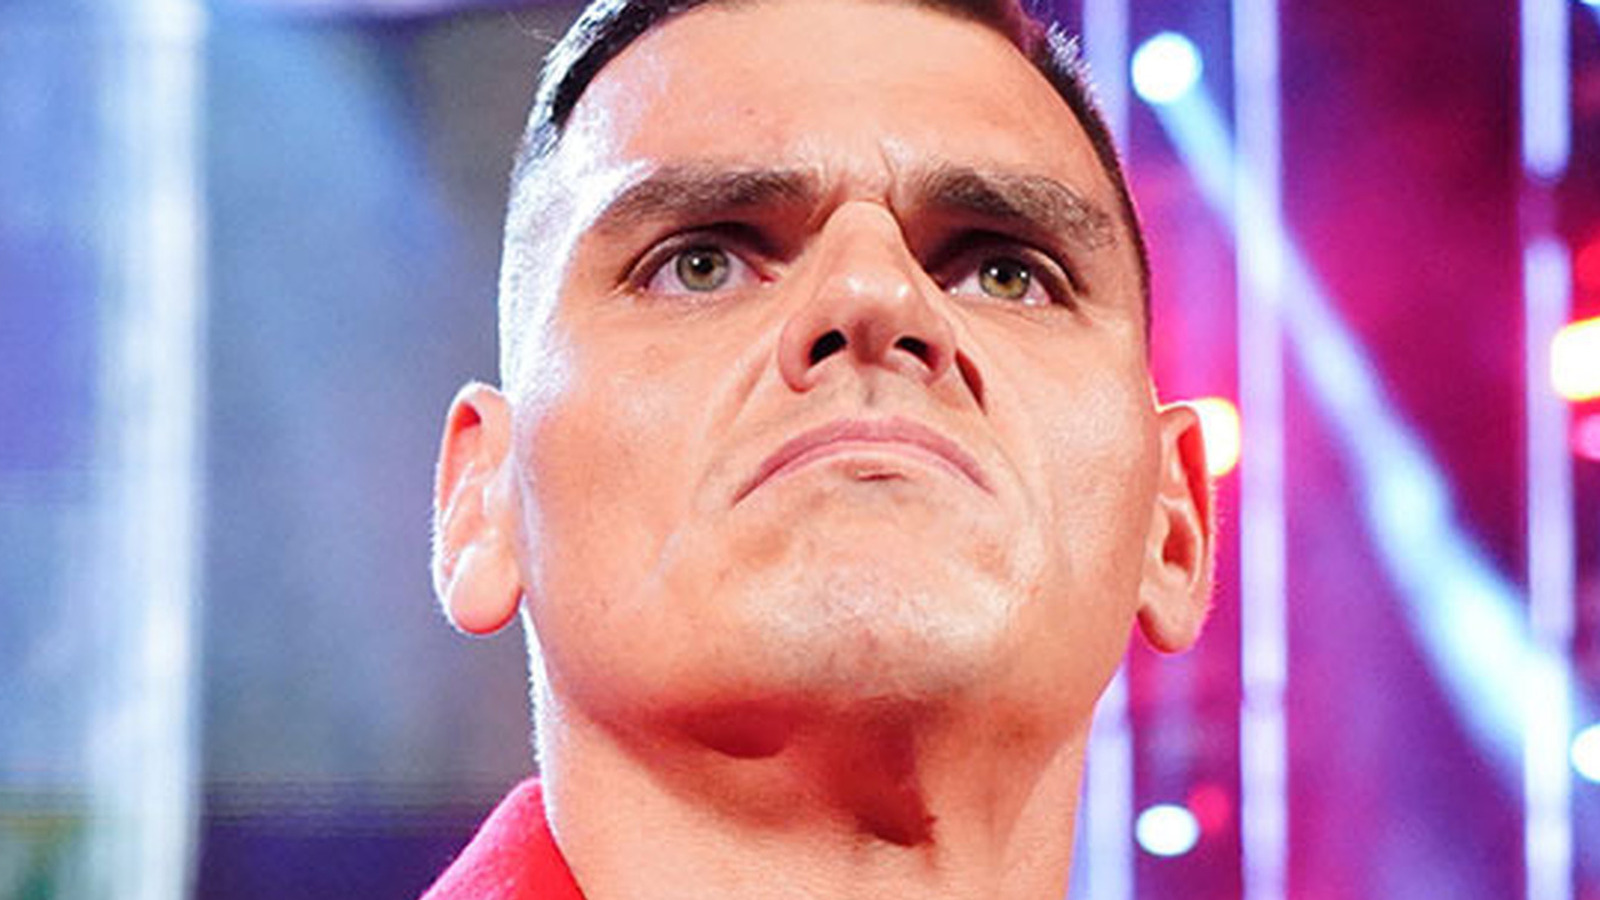 GUNTHER sabe que los fanáticos de la WWE quieren verlo luchar contra Brock Lesnar